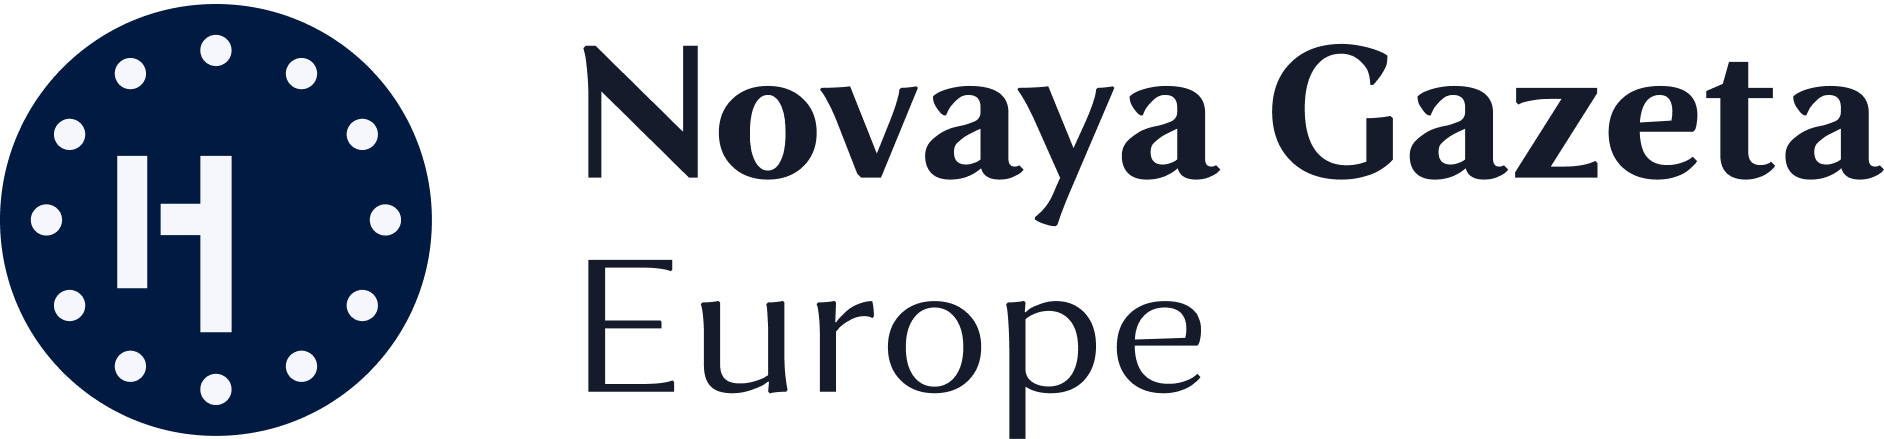 Novaya Gazeta Europe